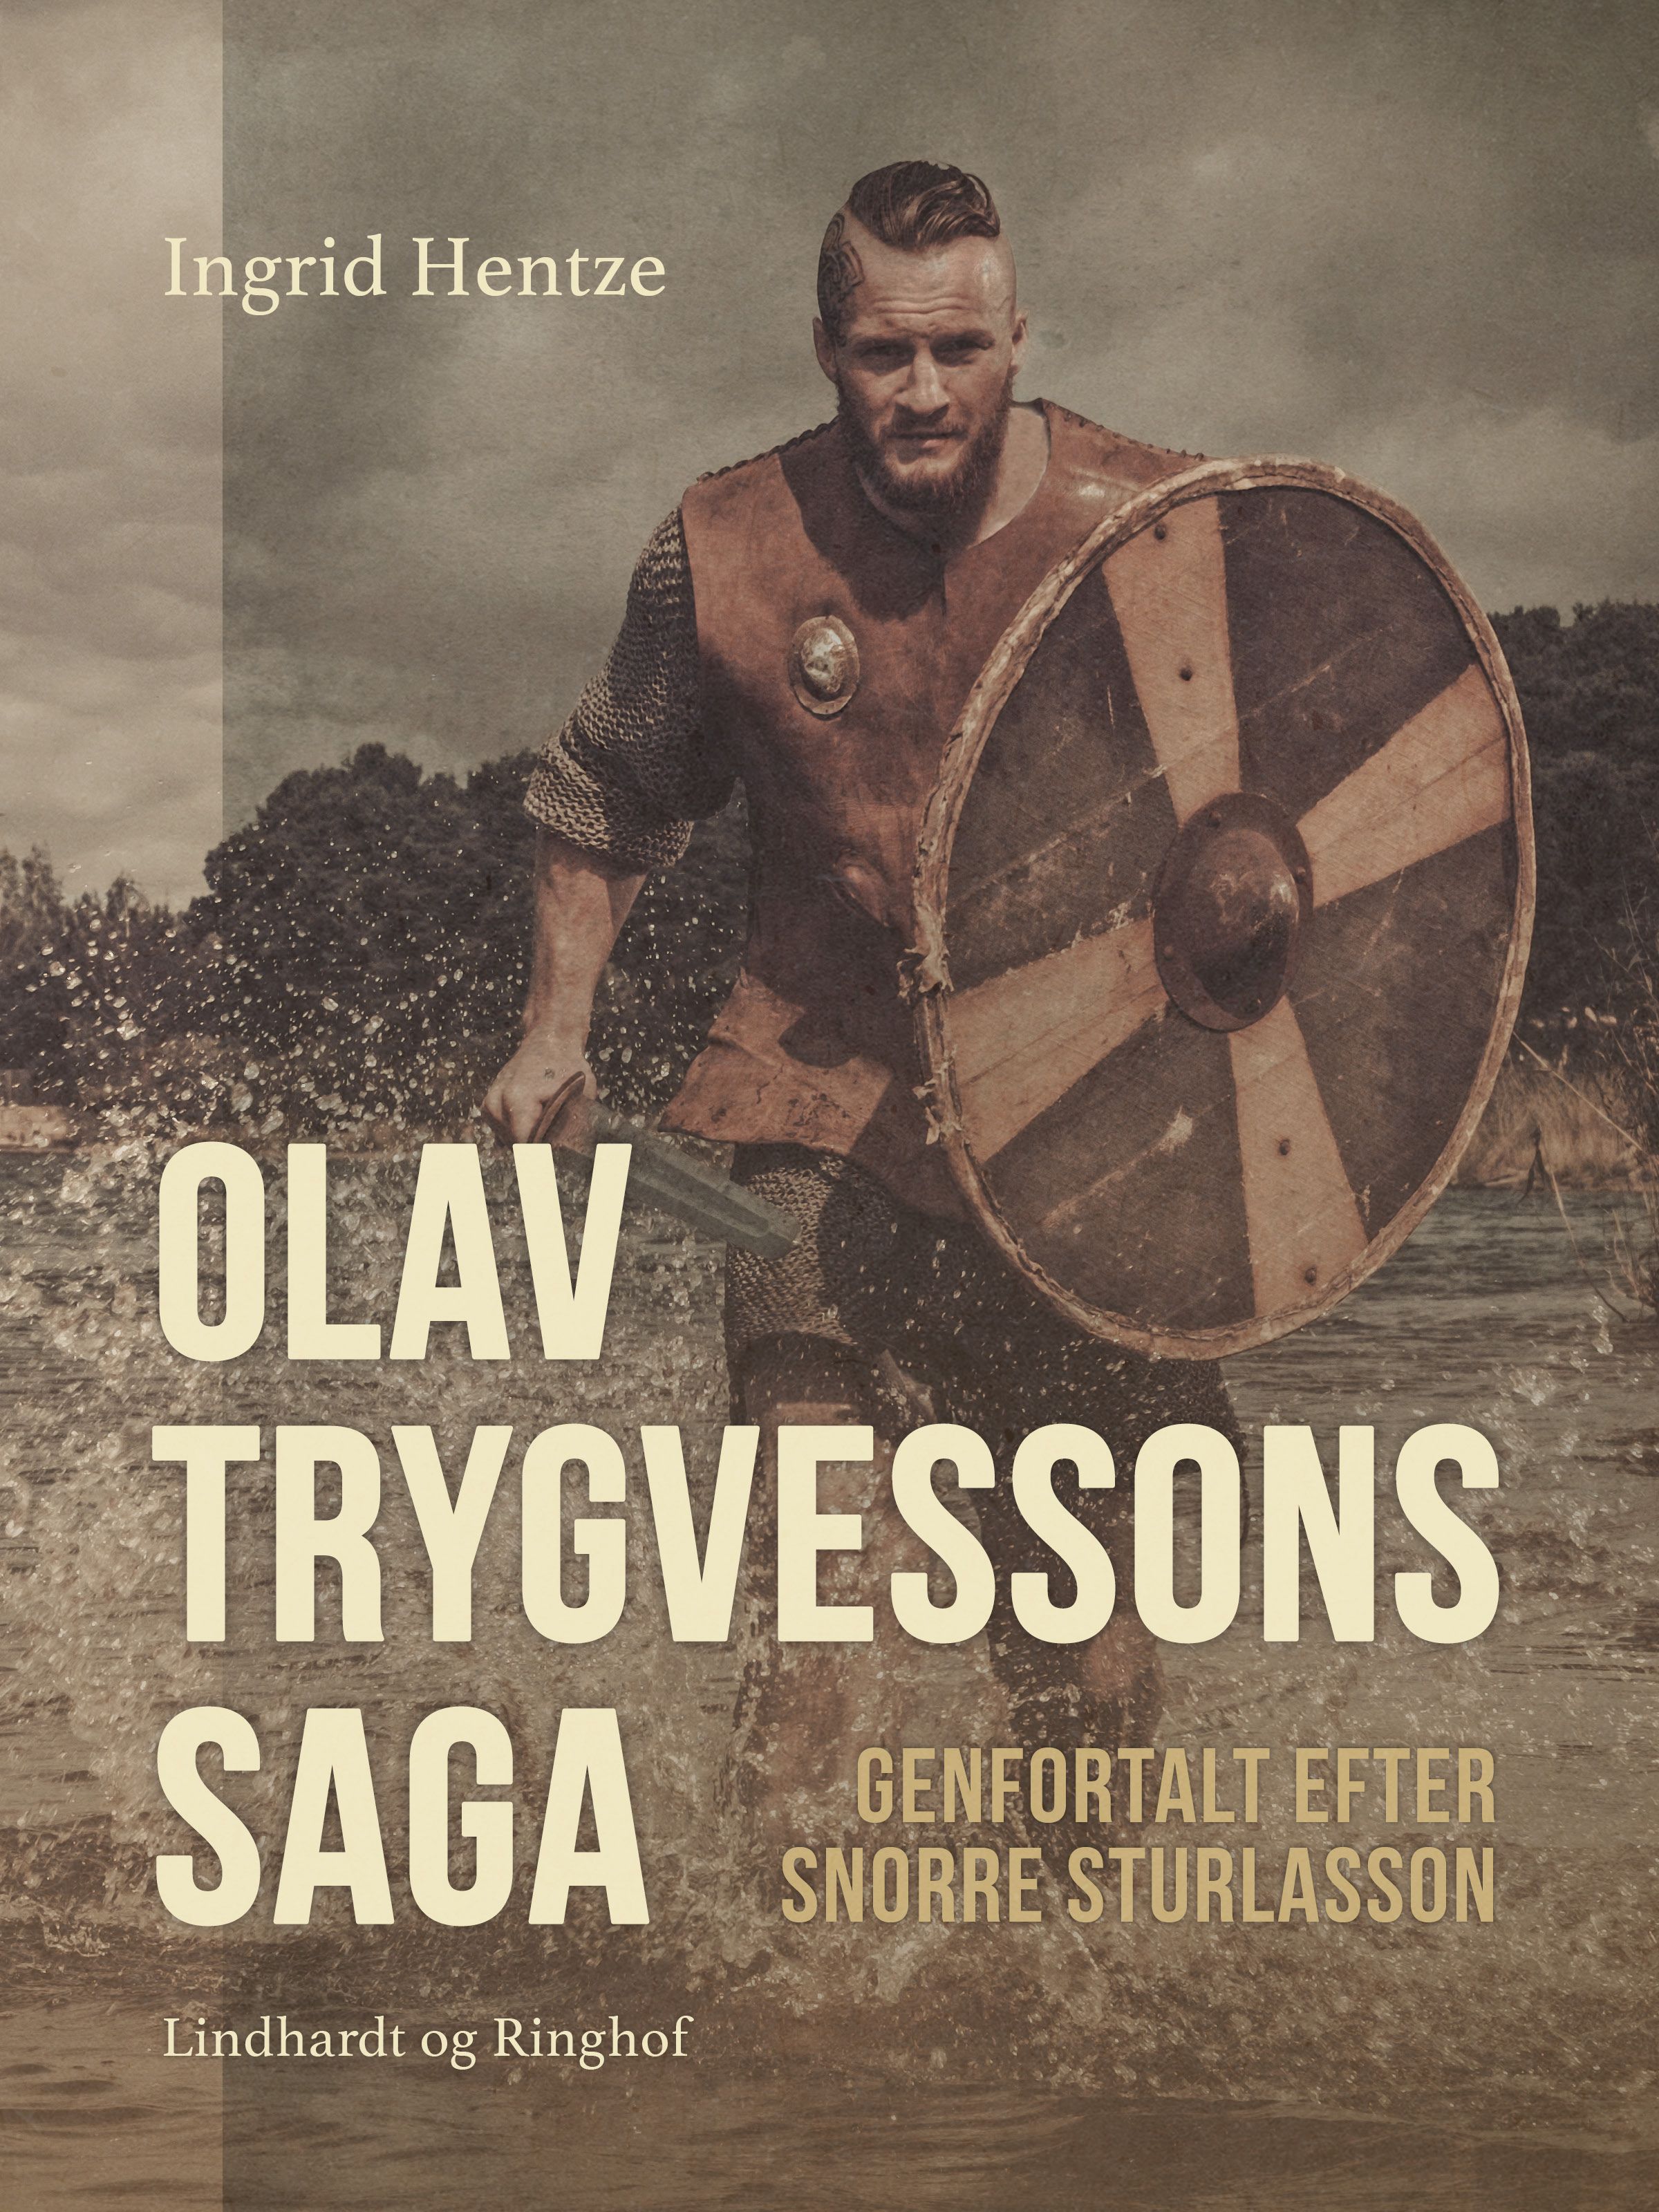 Olav Trygvessons saga. Genfortalt efter Snorre Sturlasson, e-bok av Ingrid Hentze